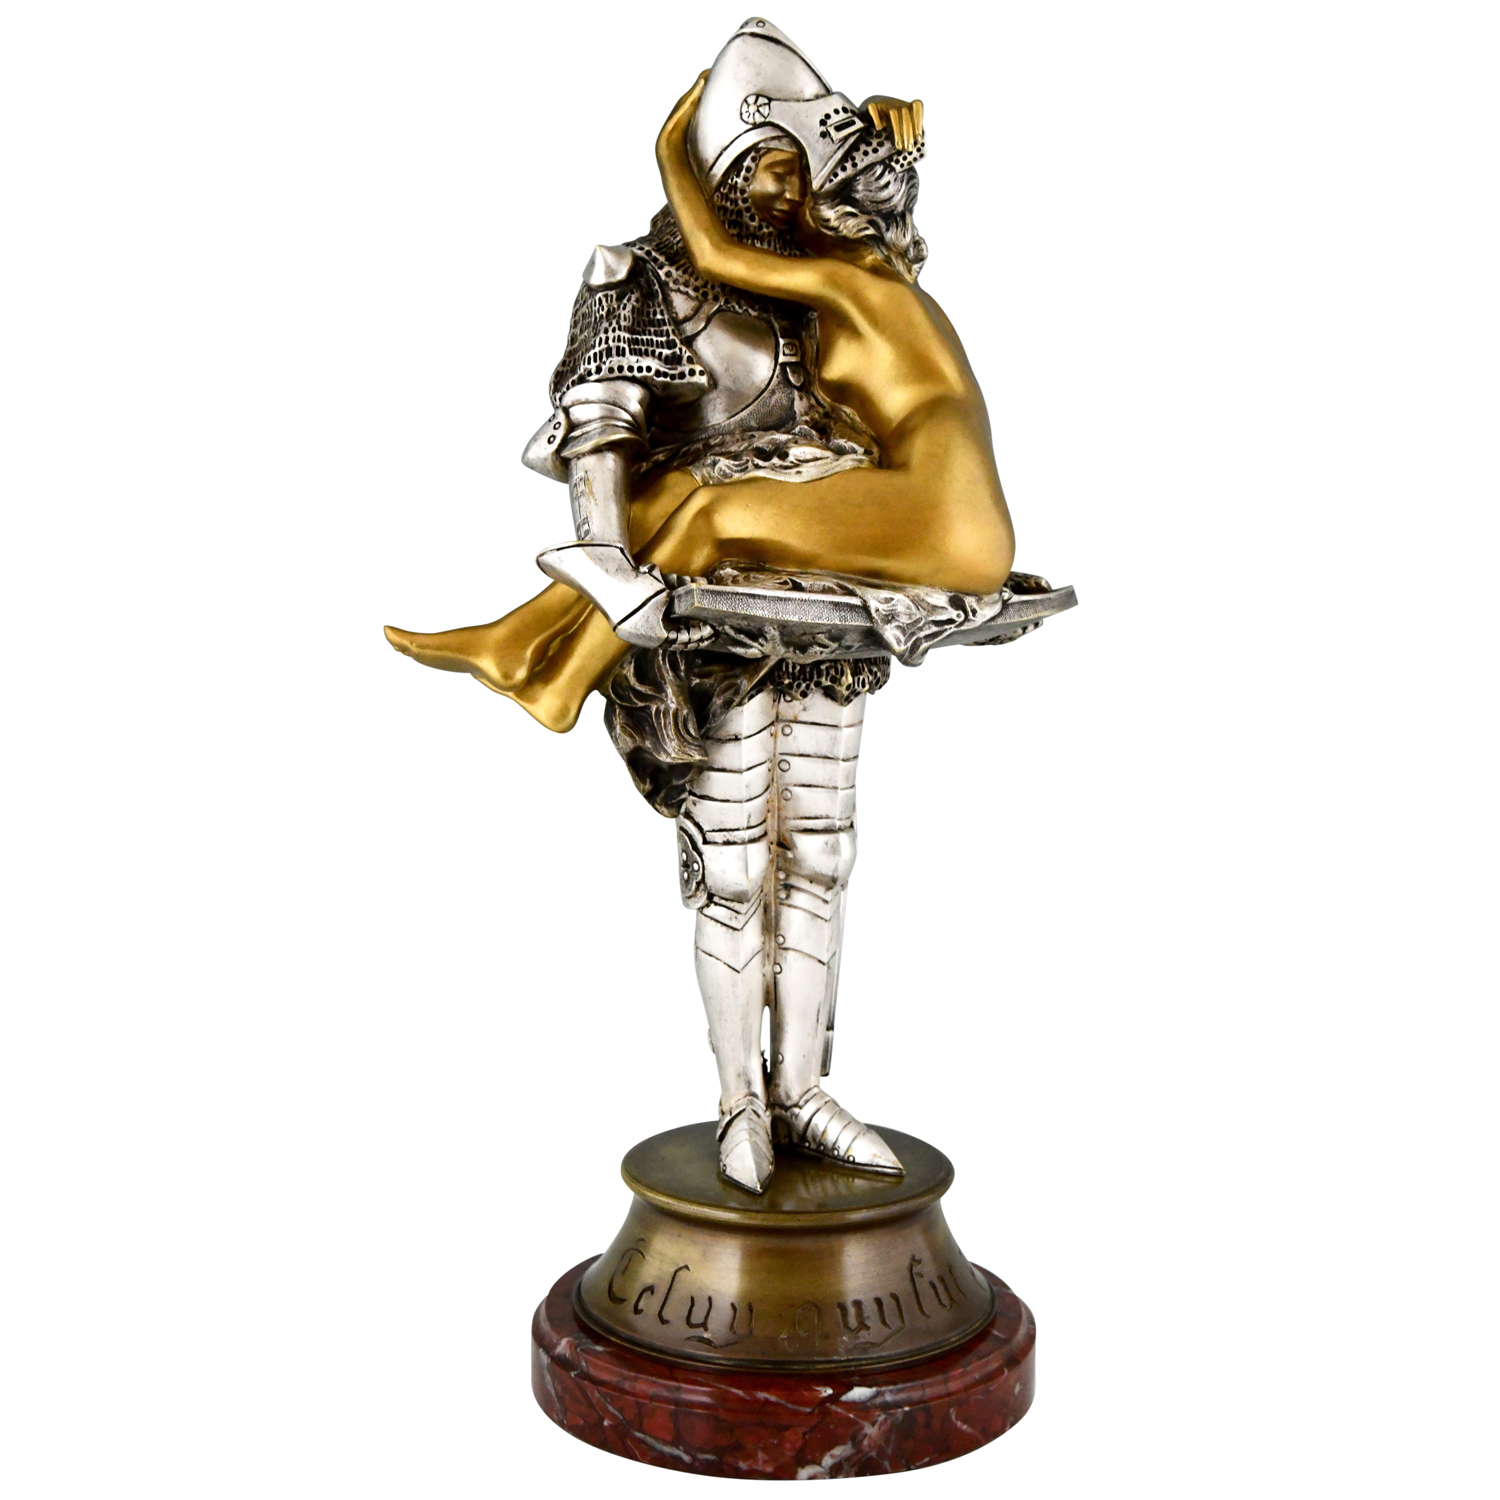 Art Nouveau bronzen sculptuur ridder met naakte vrouw